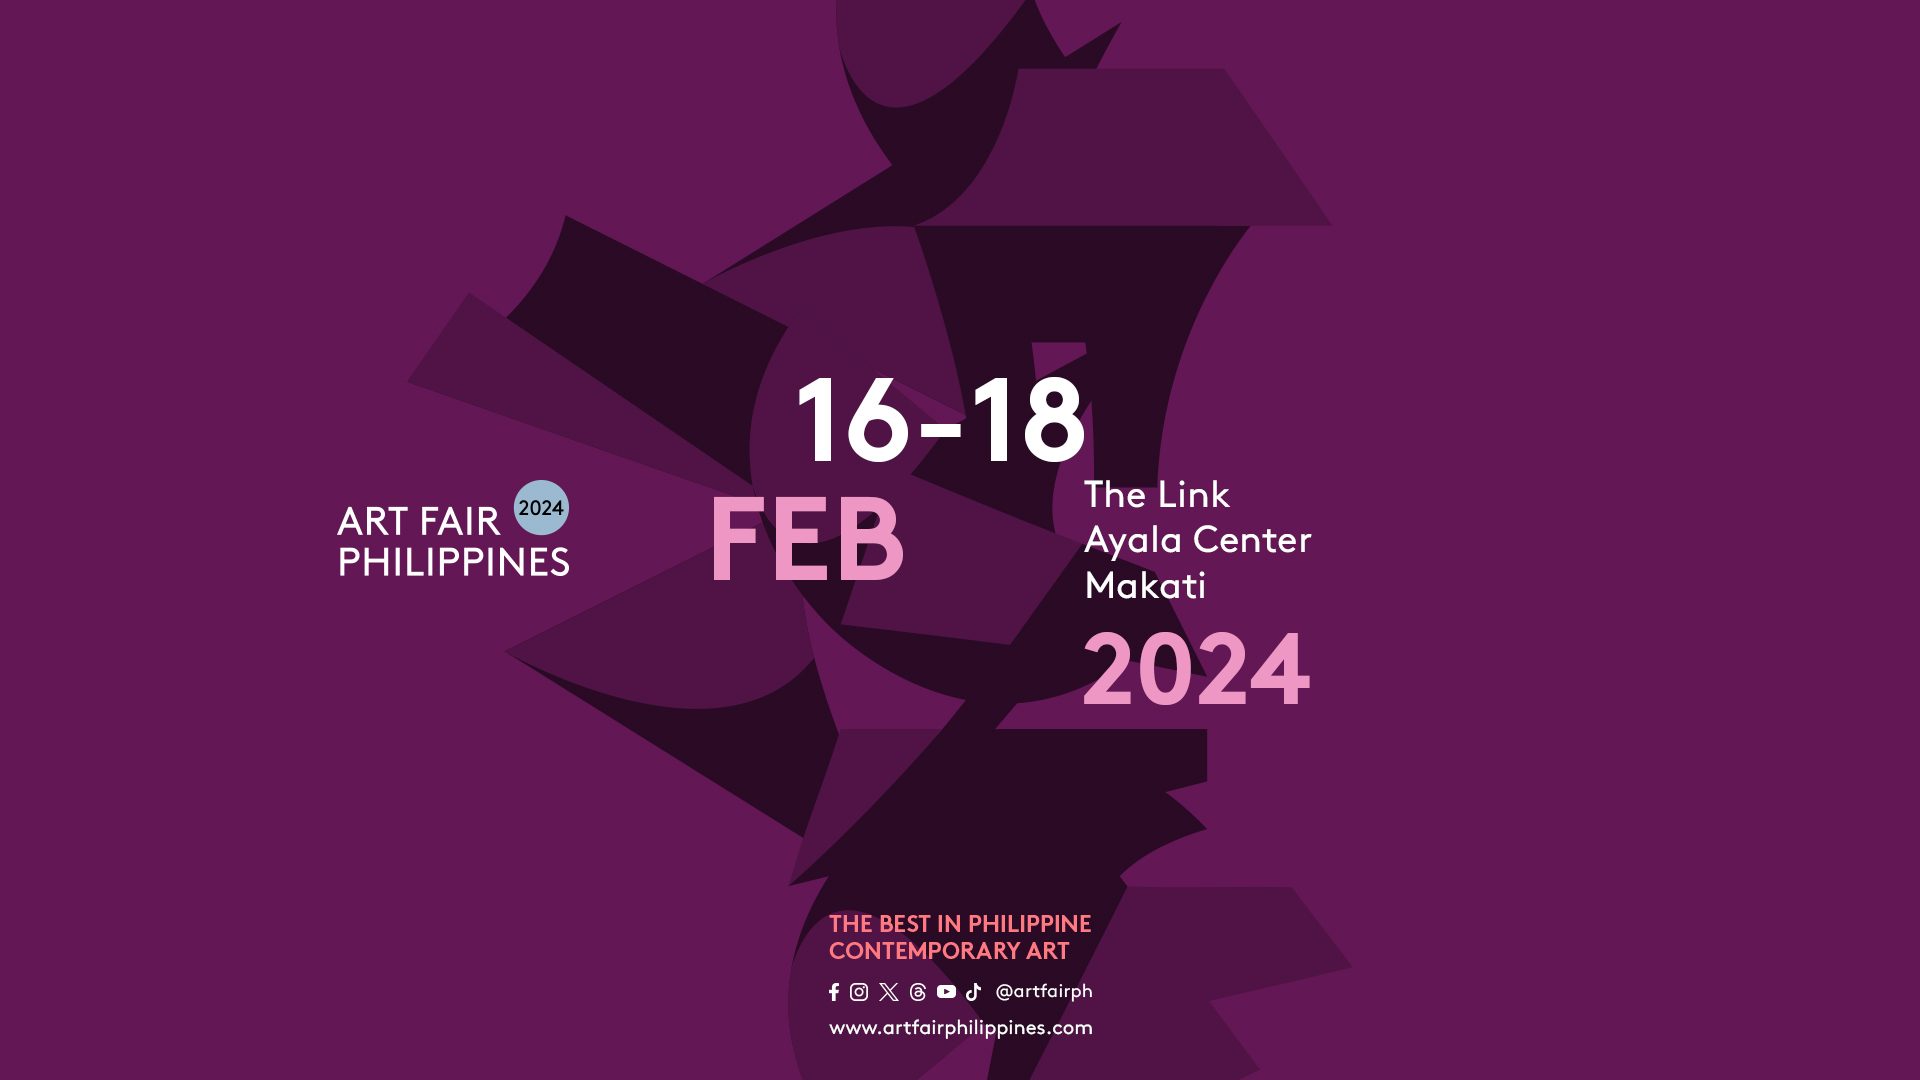 Art Fair Philippines announces 2024 dates